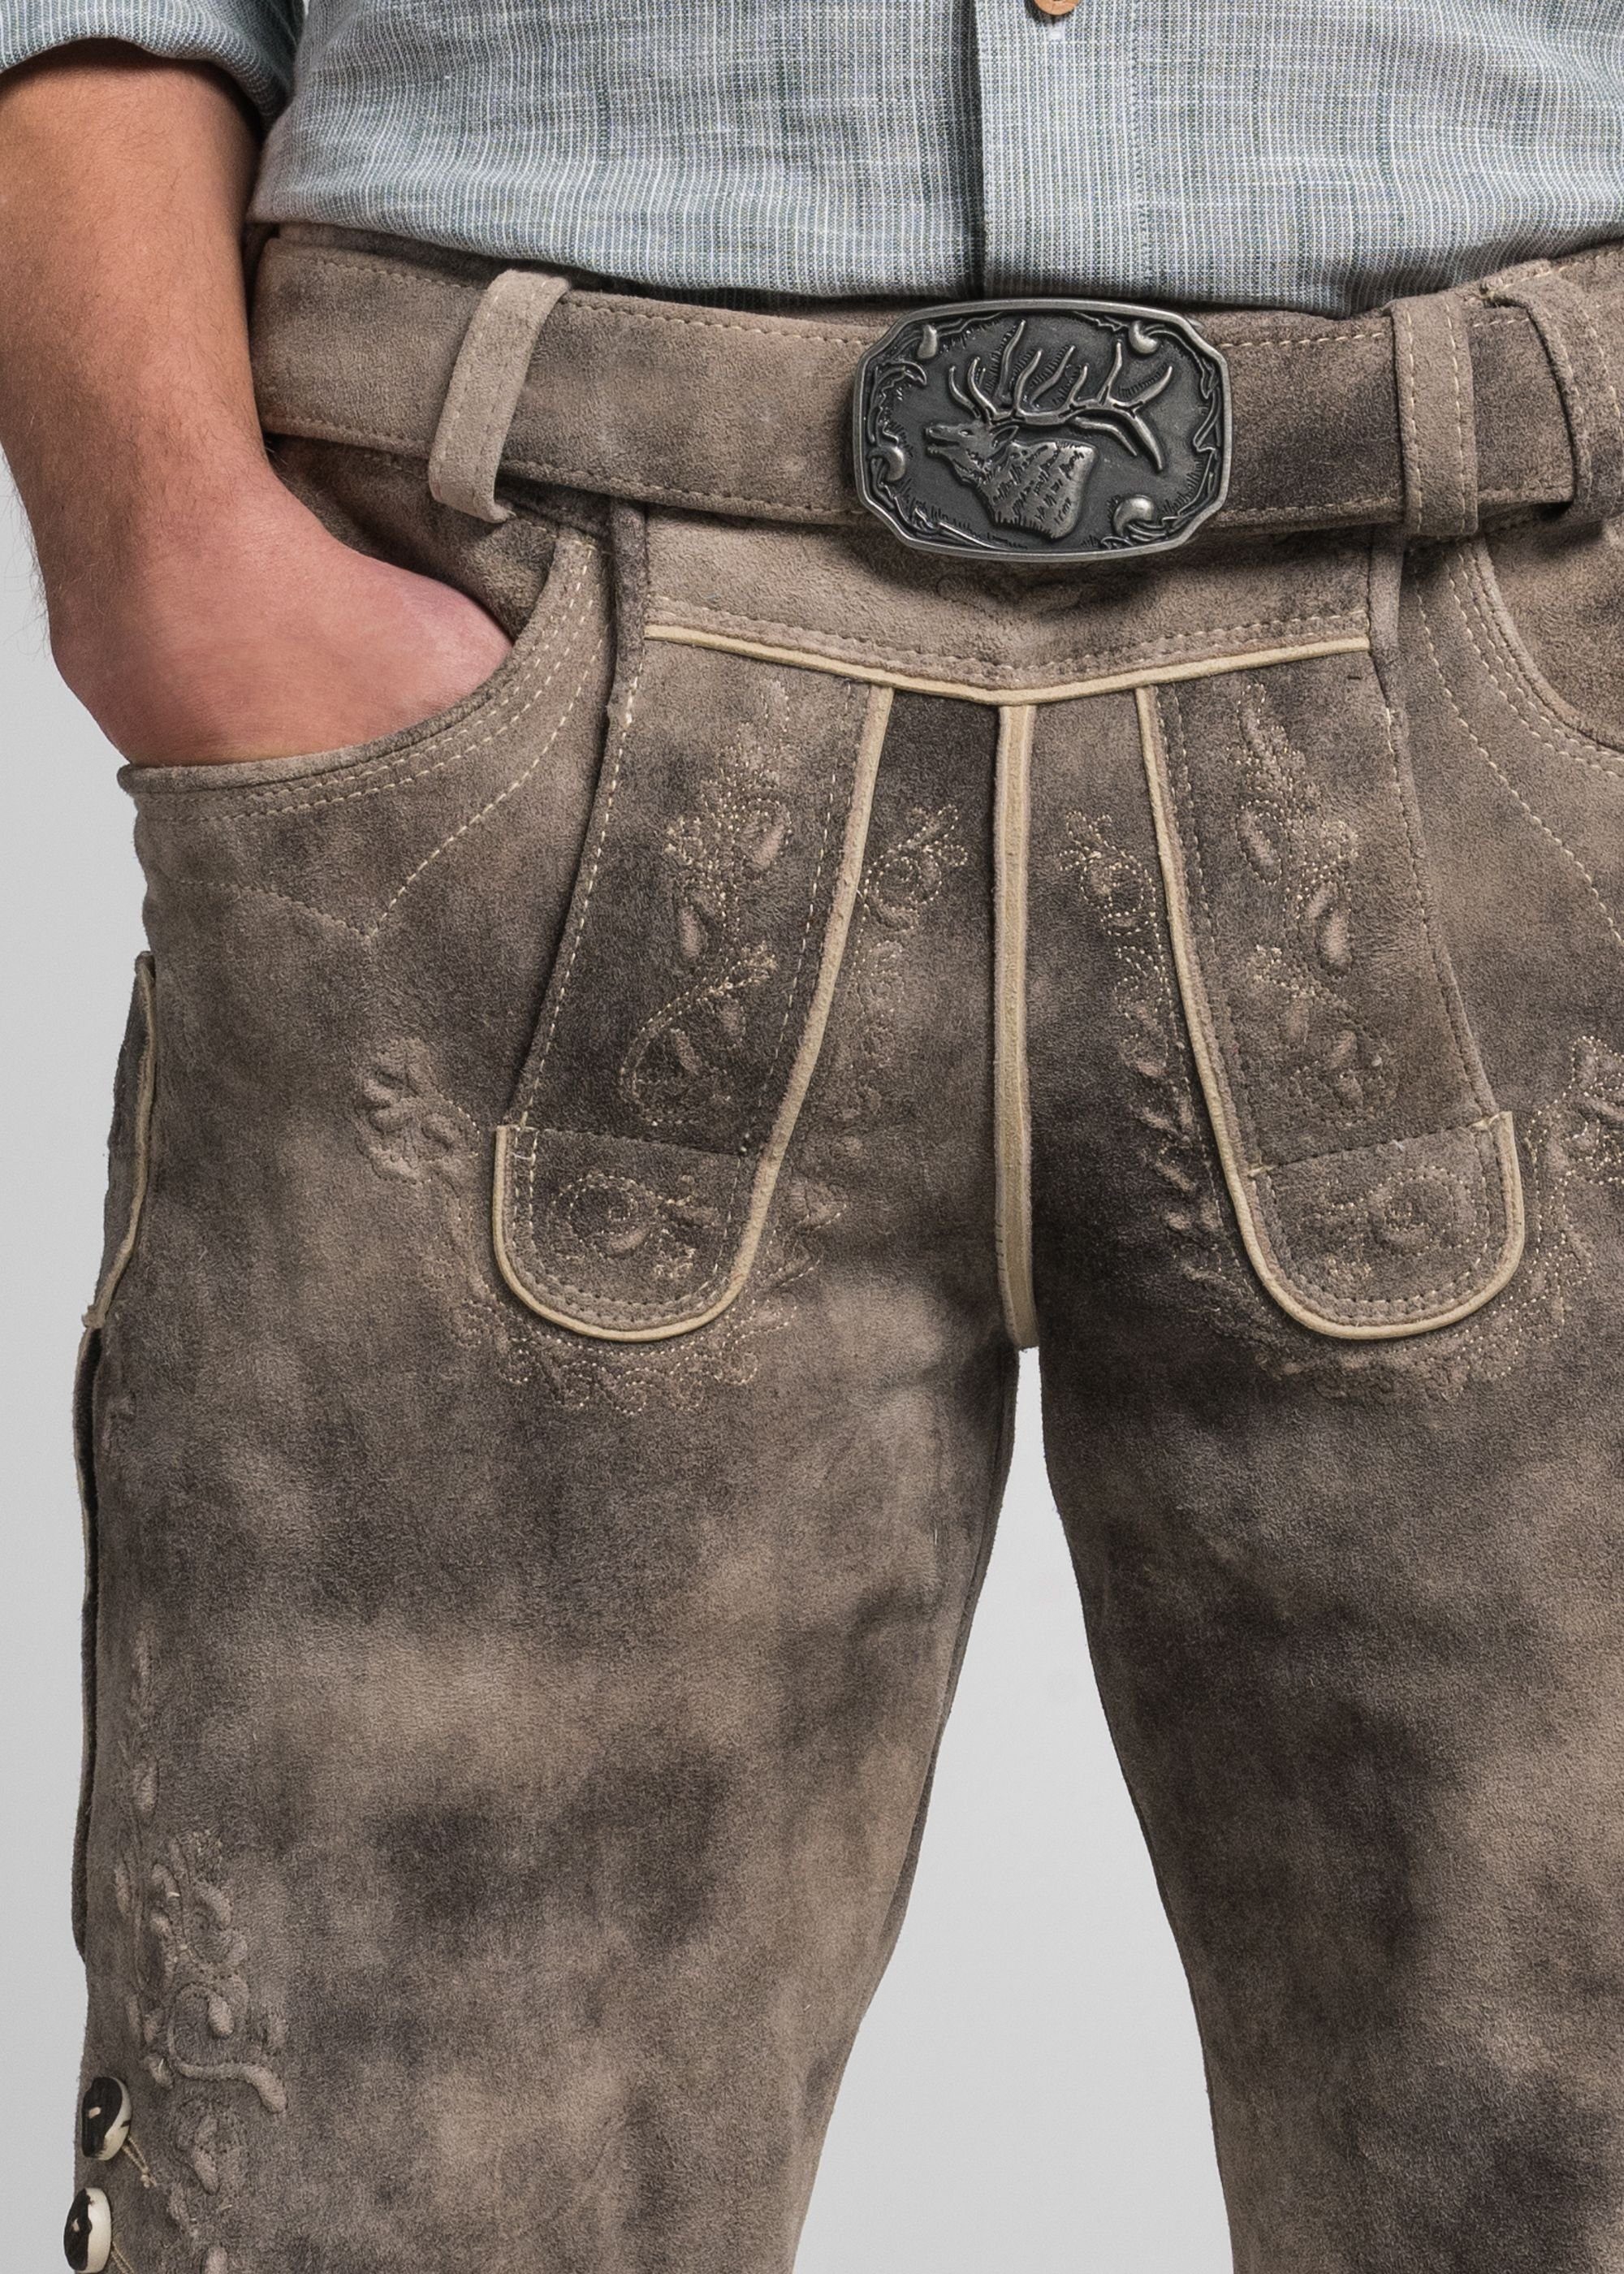 & oxford/St N134-D Alex Stickerei Wensky mit sand traditioneller Spieth Shorts